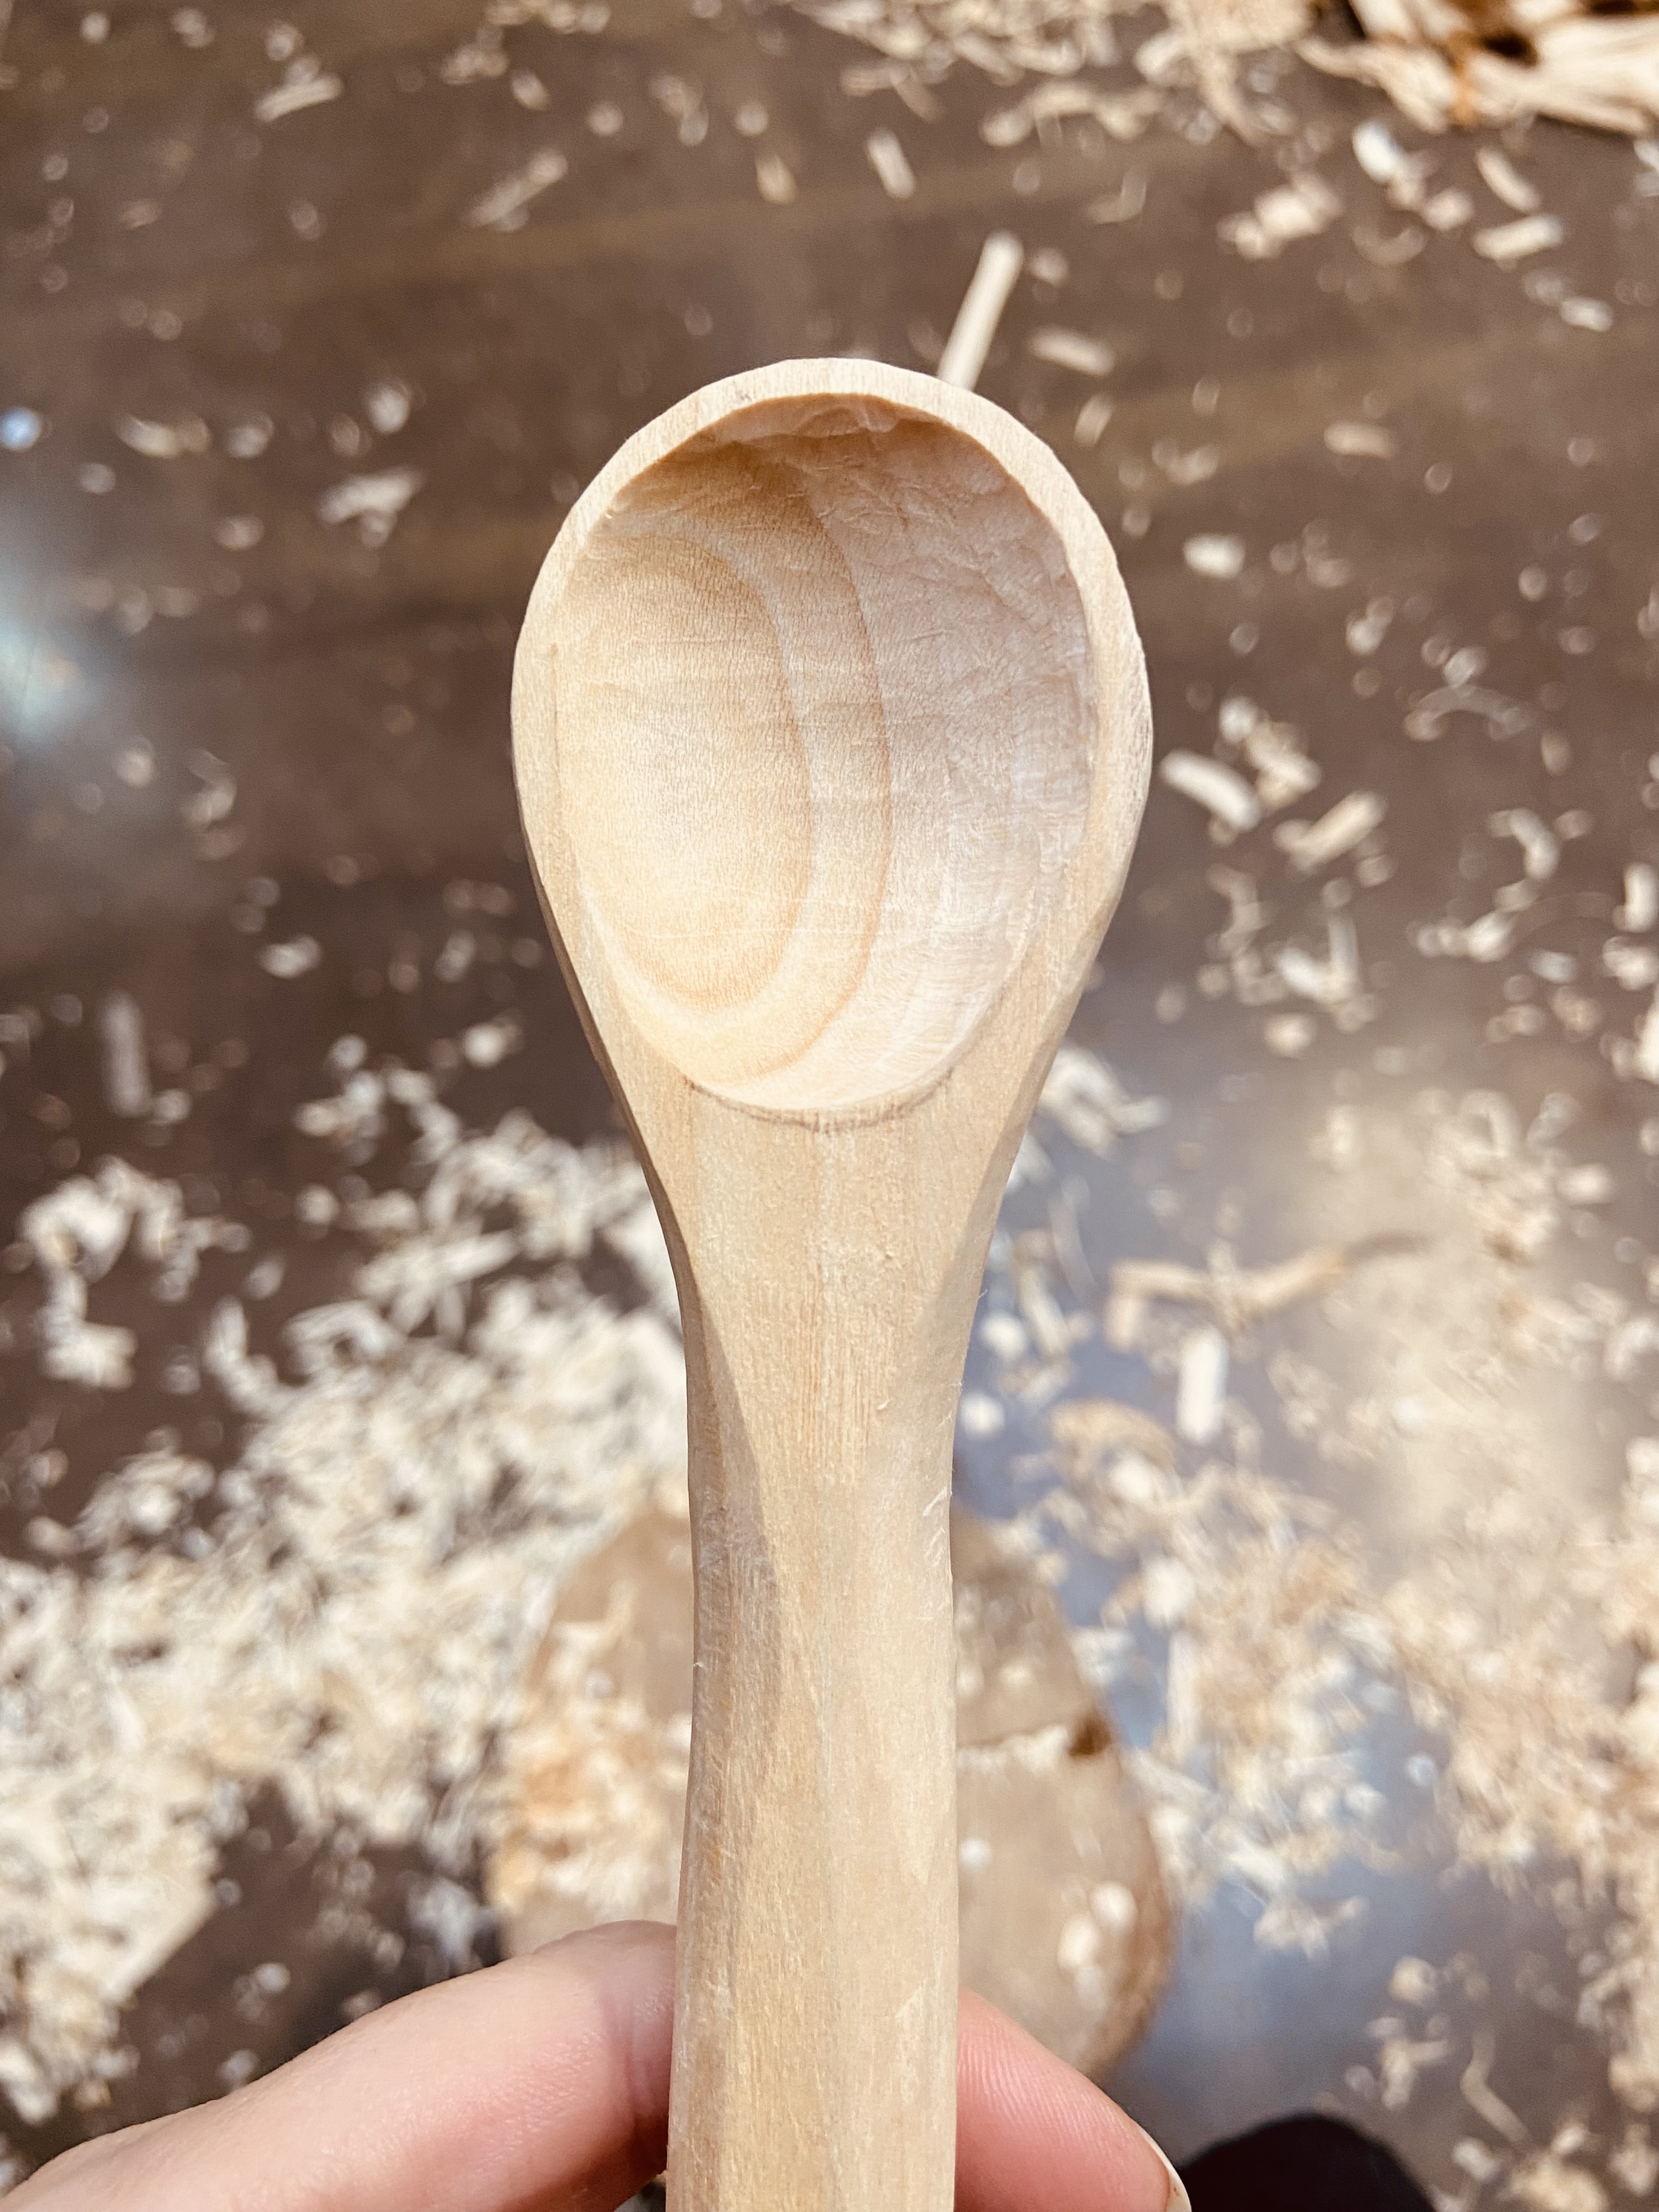 Spoon carving workshop